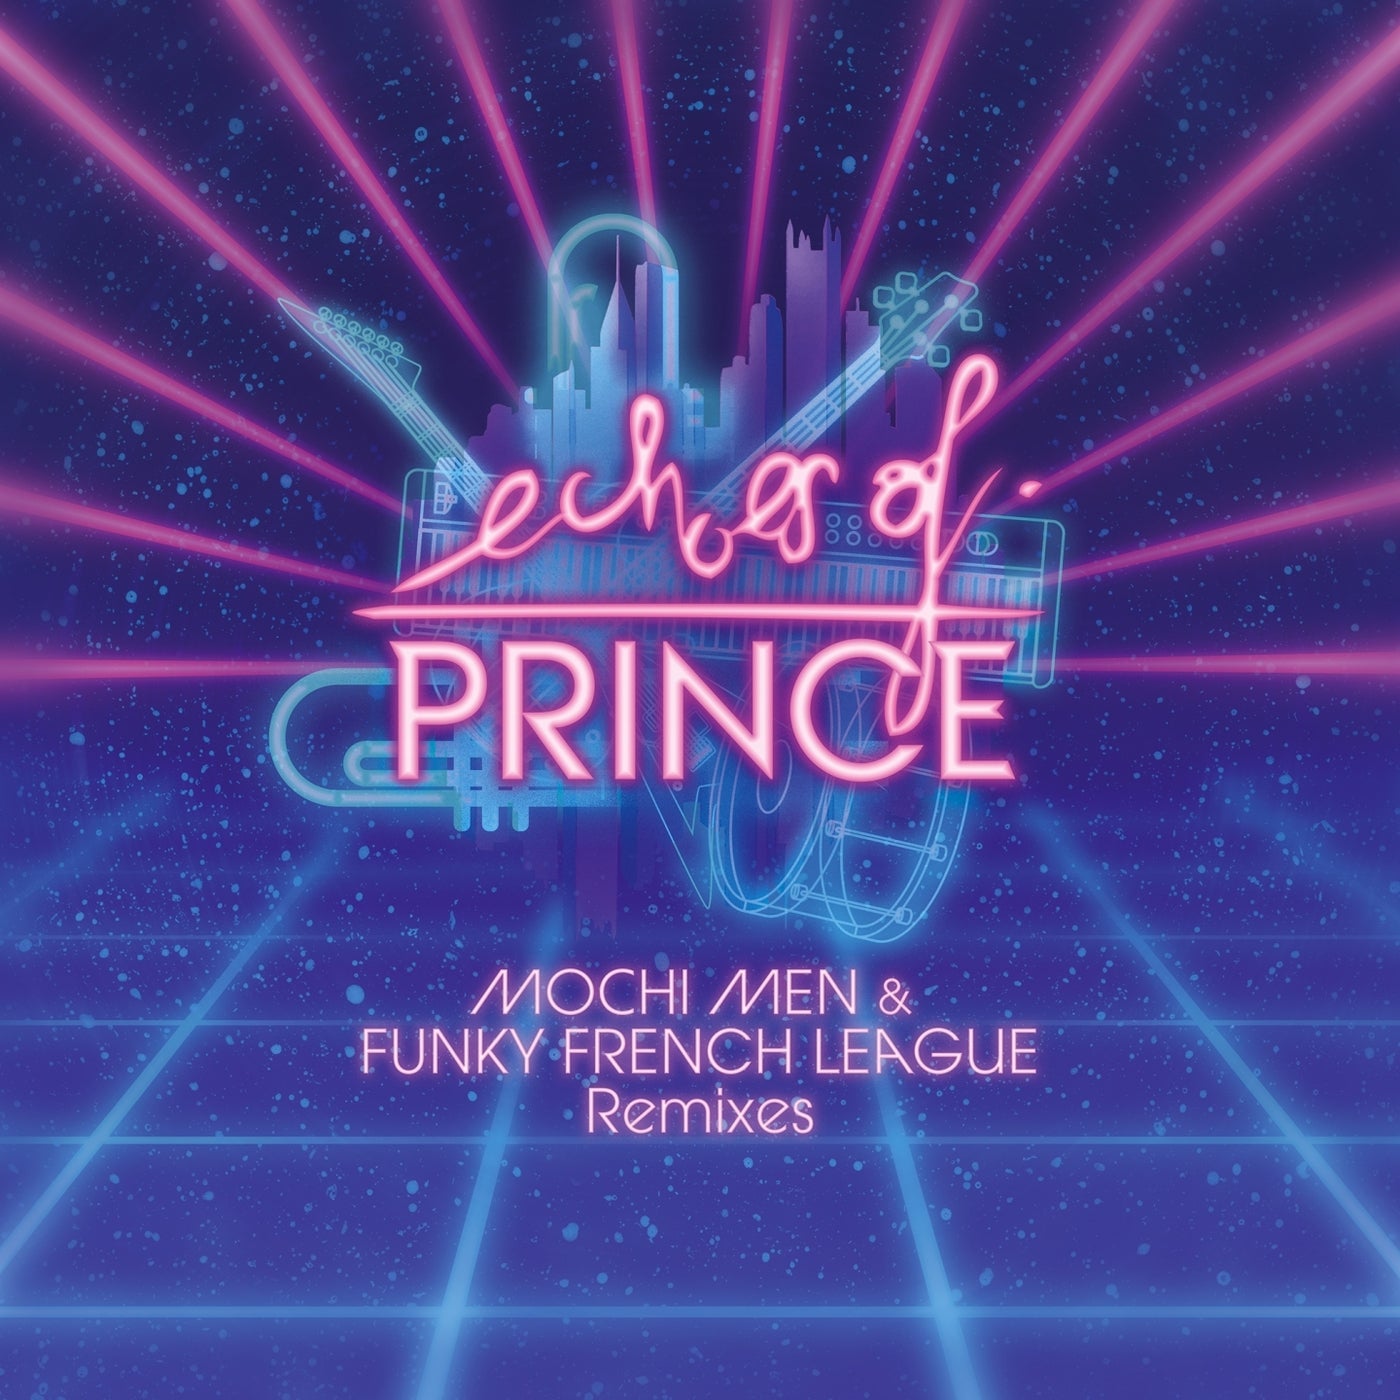 Erotic city prince PRINCE &